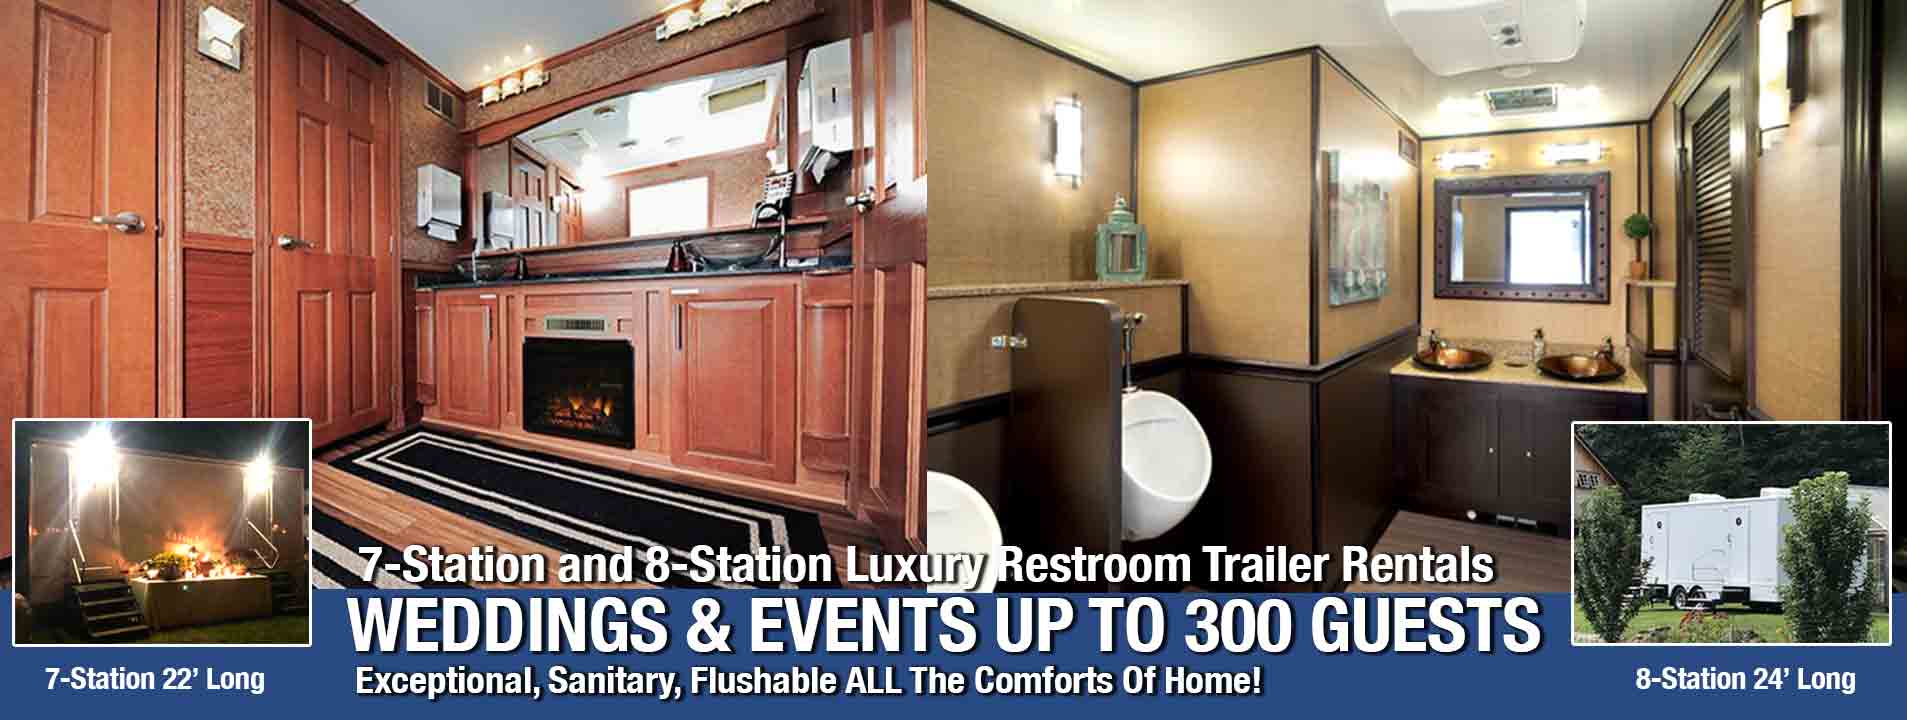 Luxury Restroom Trailers - Portable Bathroom Rentals